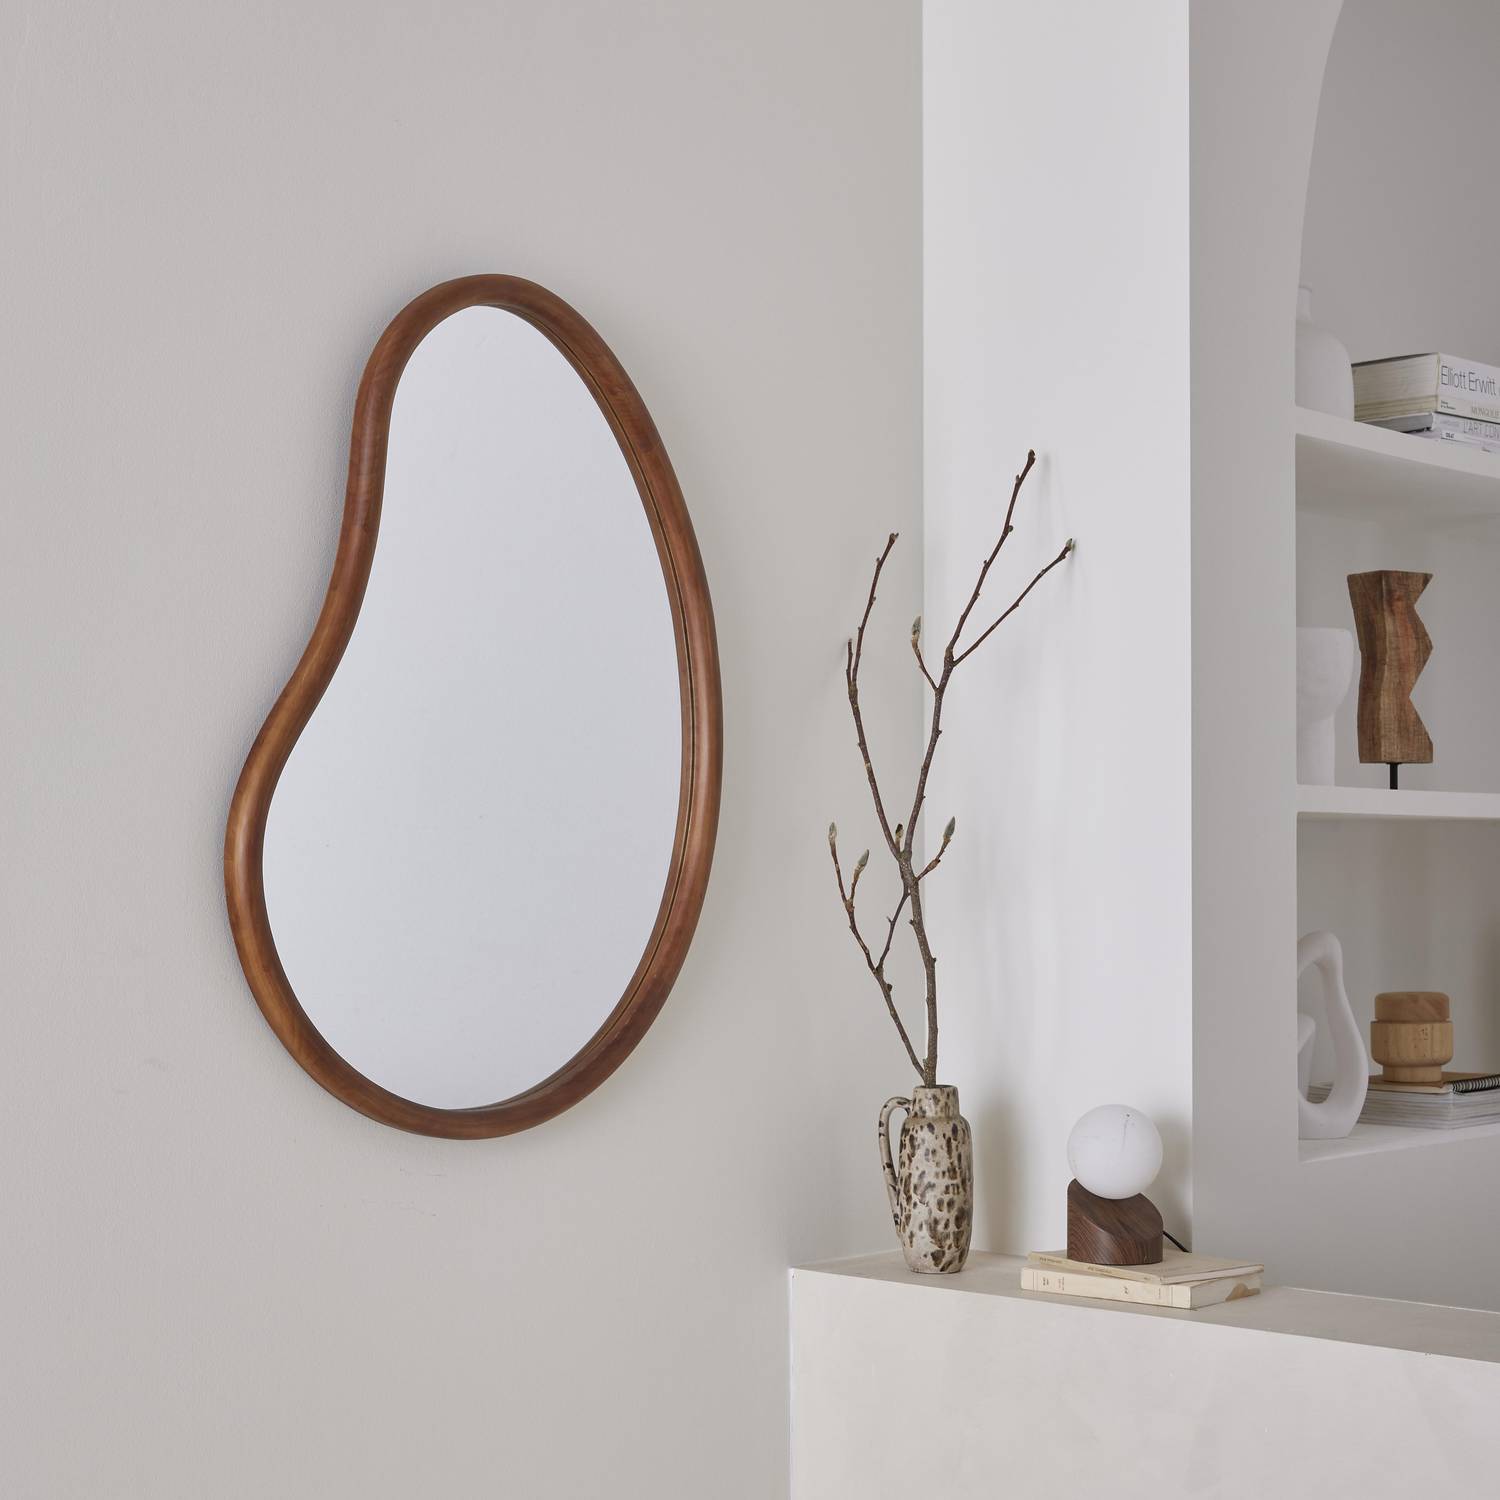 Organischer Spiegel aus Tannenholz 85cm, 3cm dick, nussbaumfarben, ideal für Eingang, Schlafzimmer oder Badezimmer - Jacob Photo1